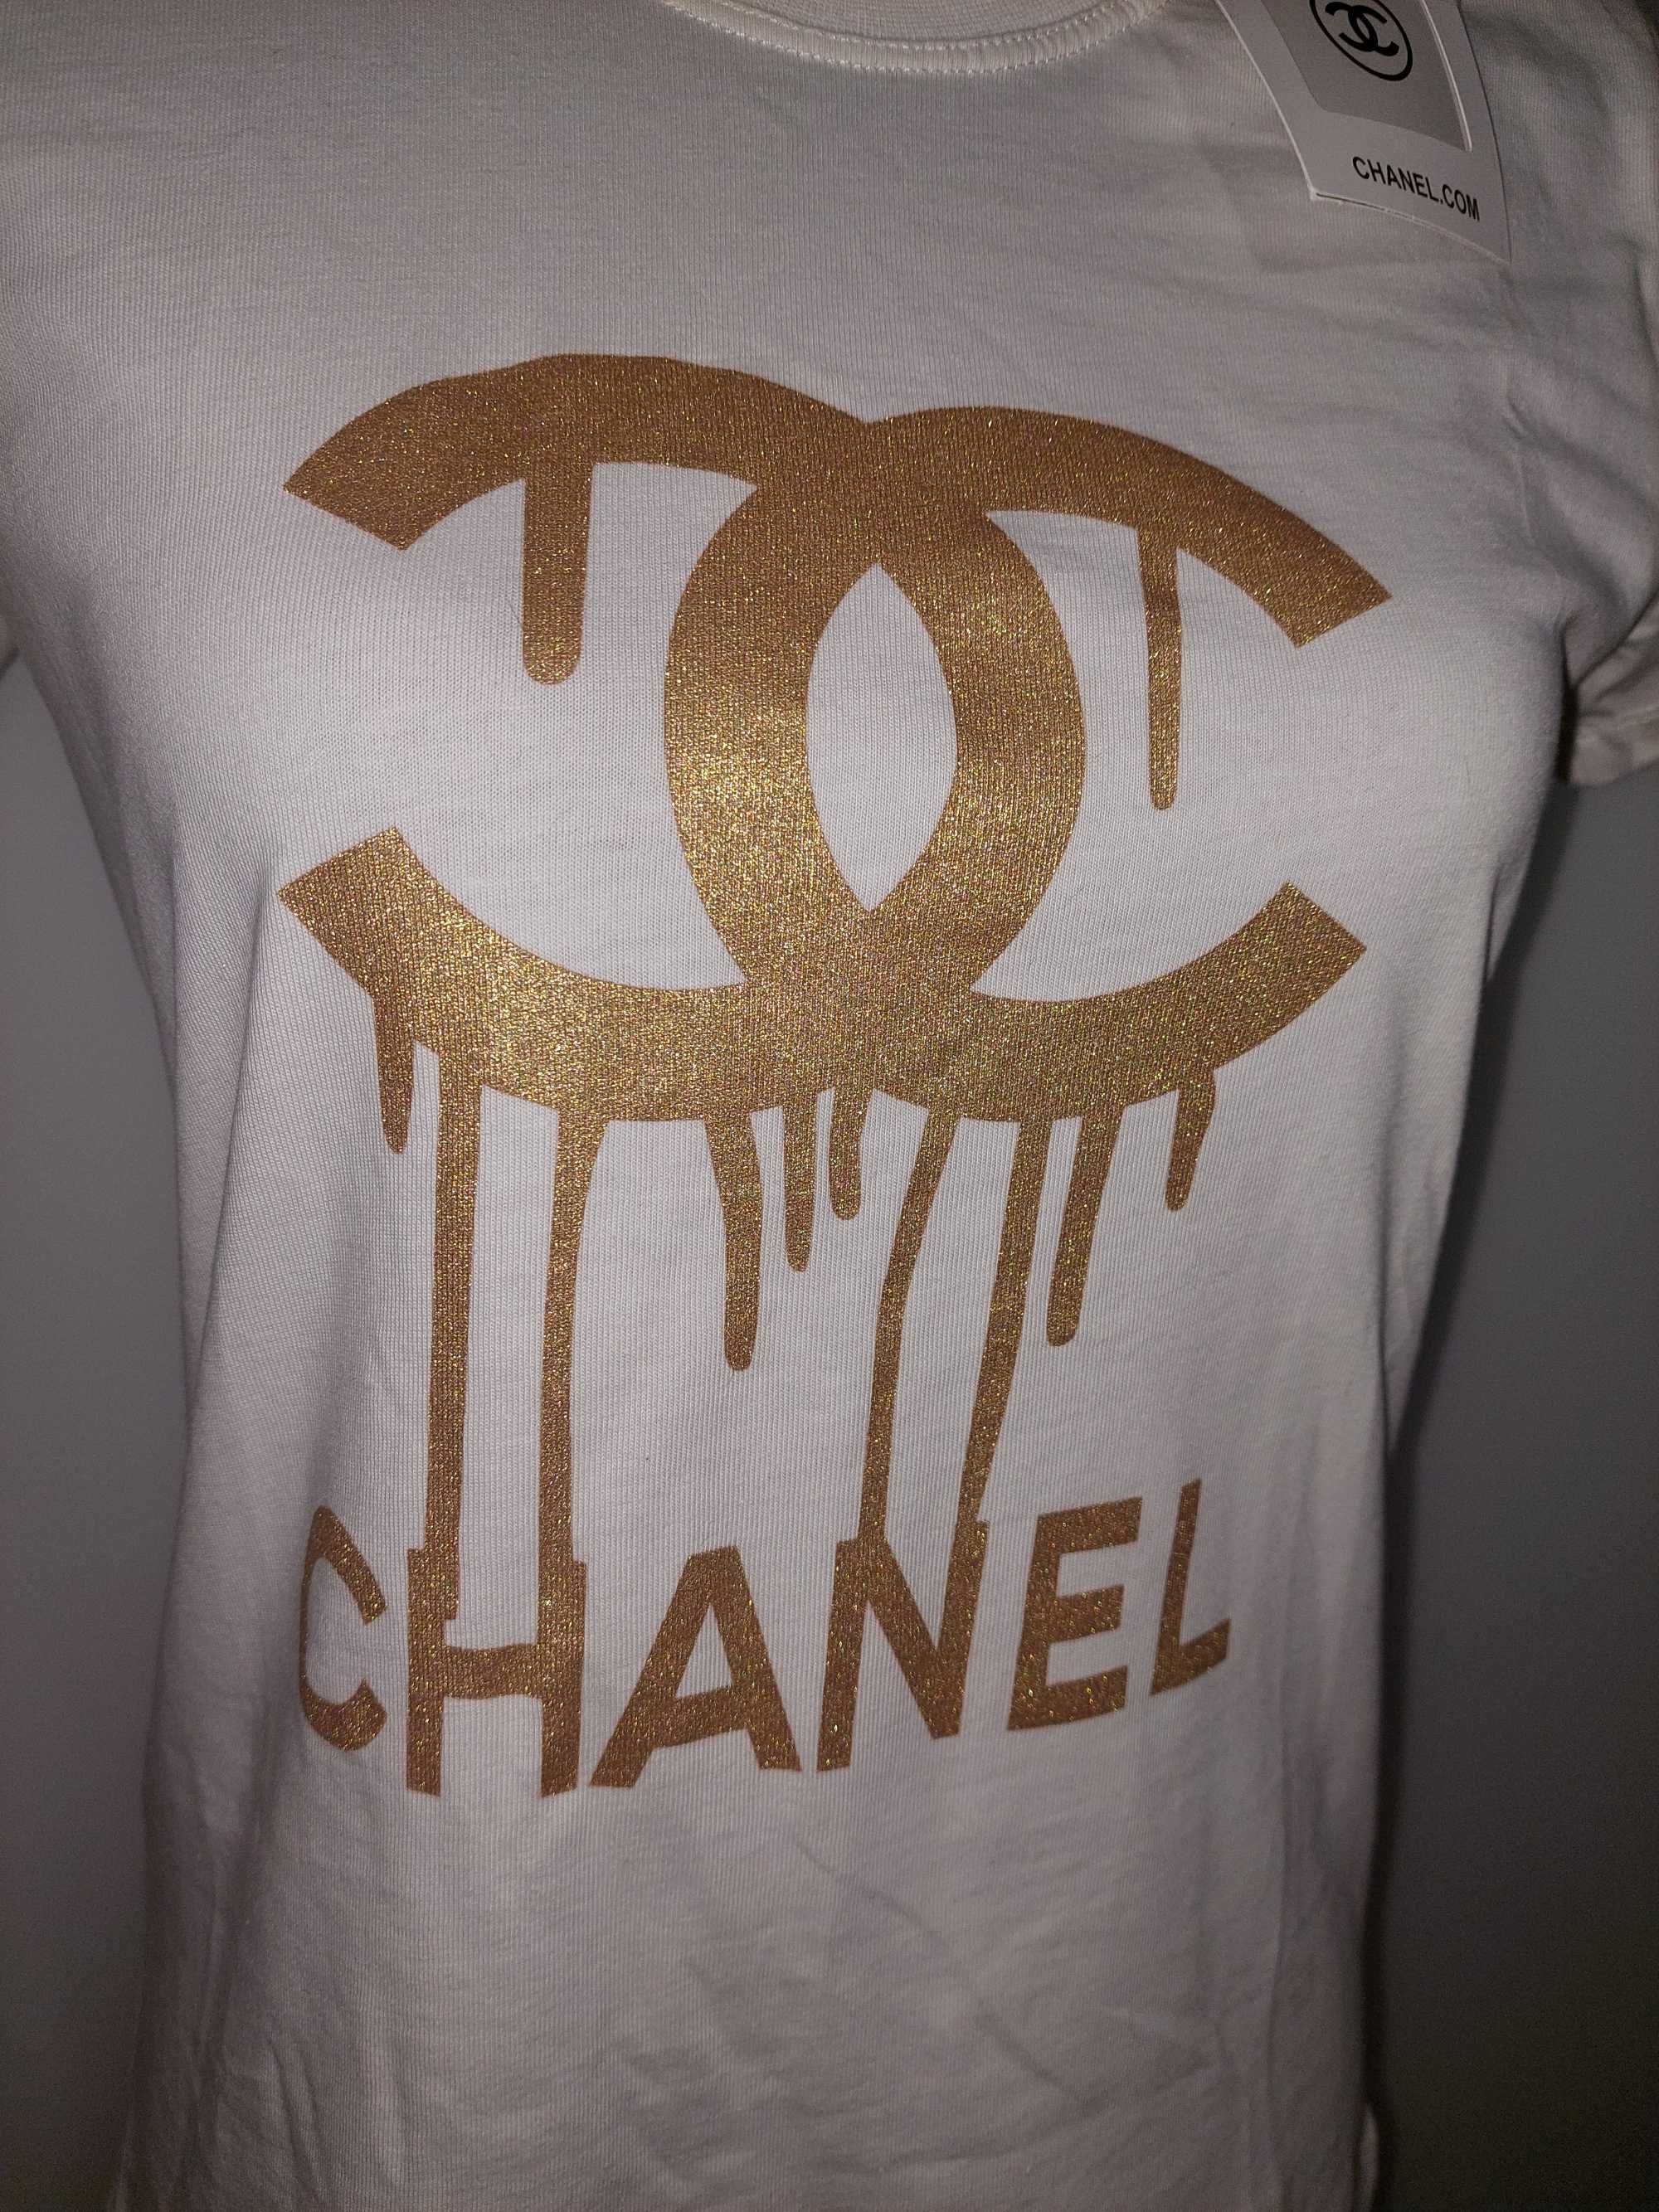 Tricou alb Chanel marime L, cu imprimeu auriu, nou cu eticheta